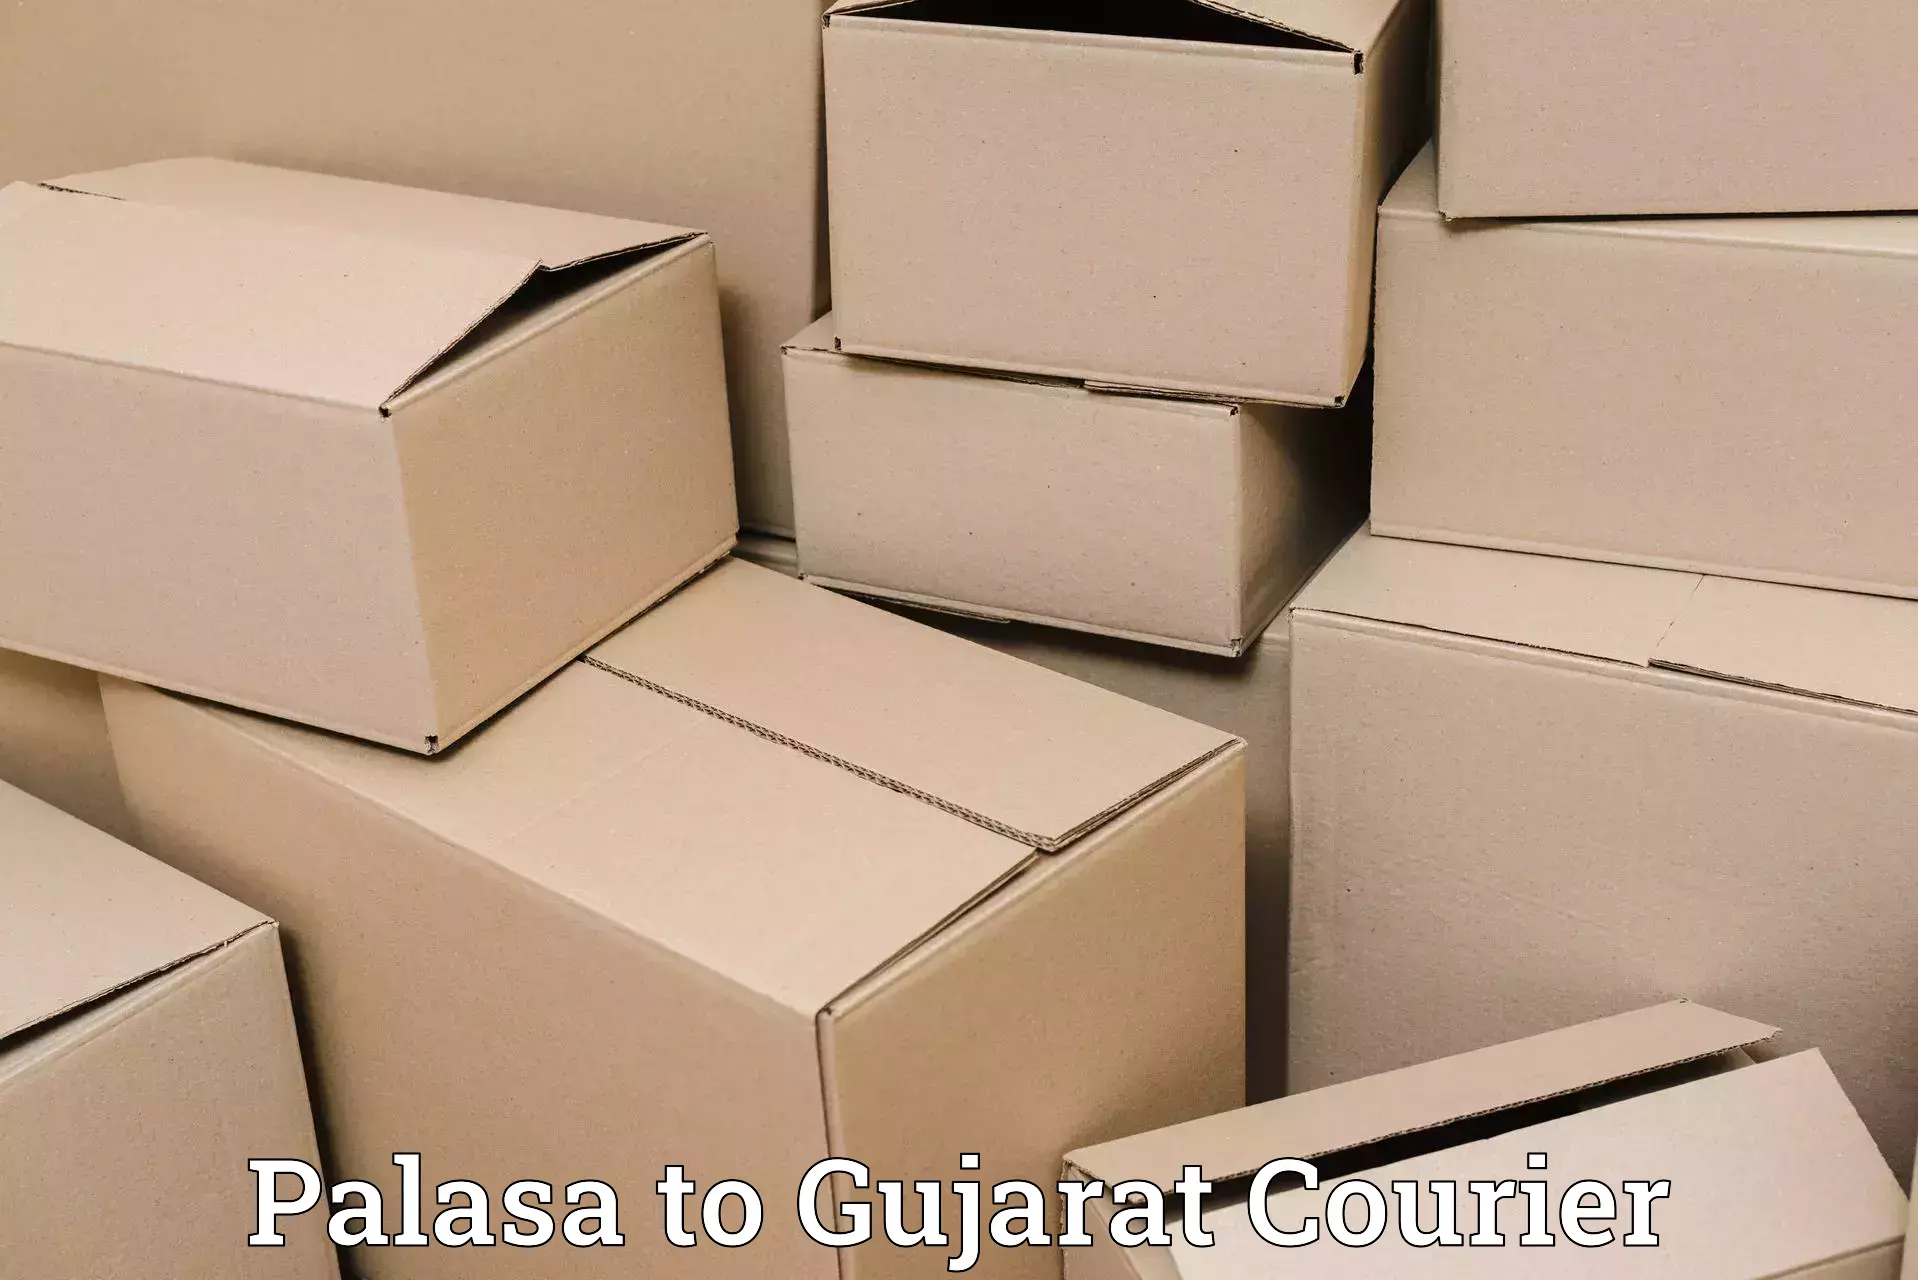 24-hour courier service Palasa to Patan Gujarat